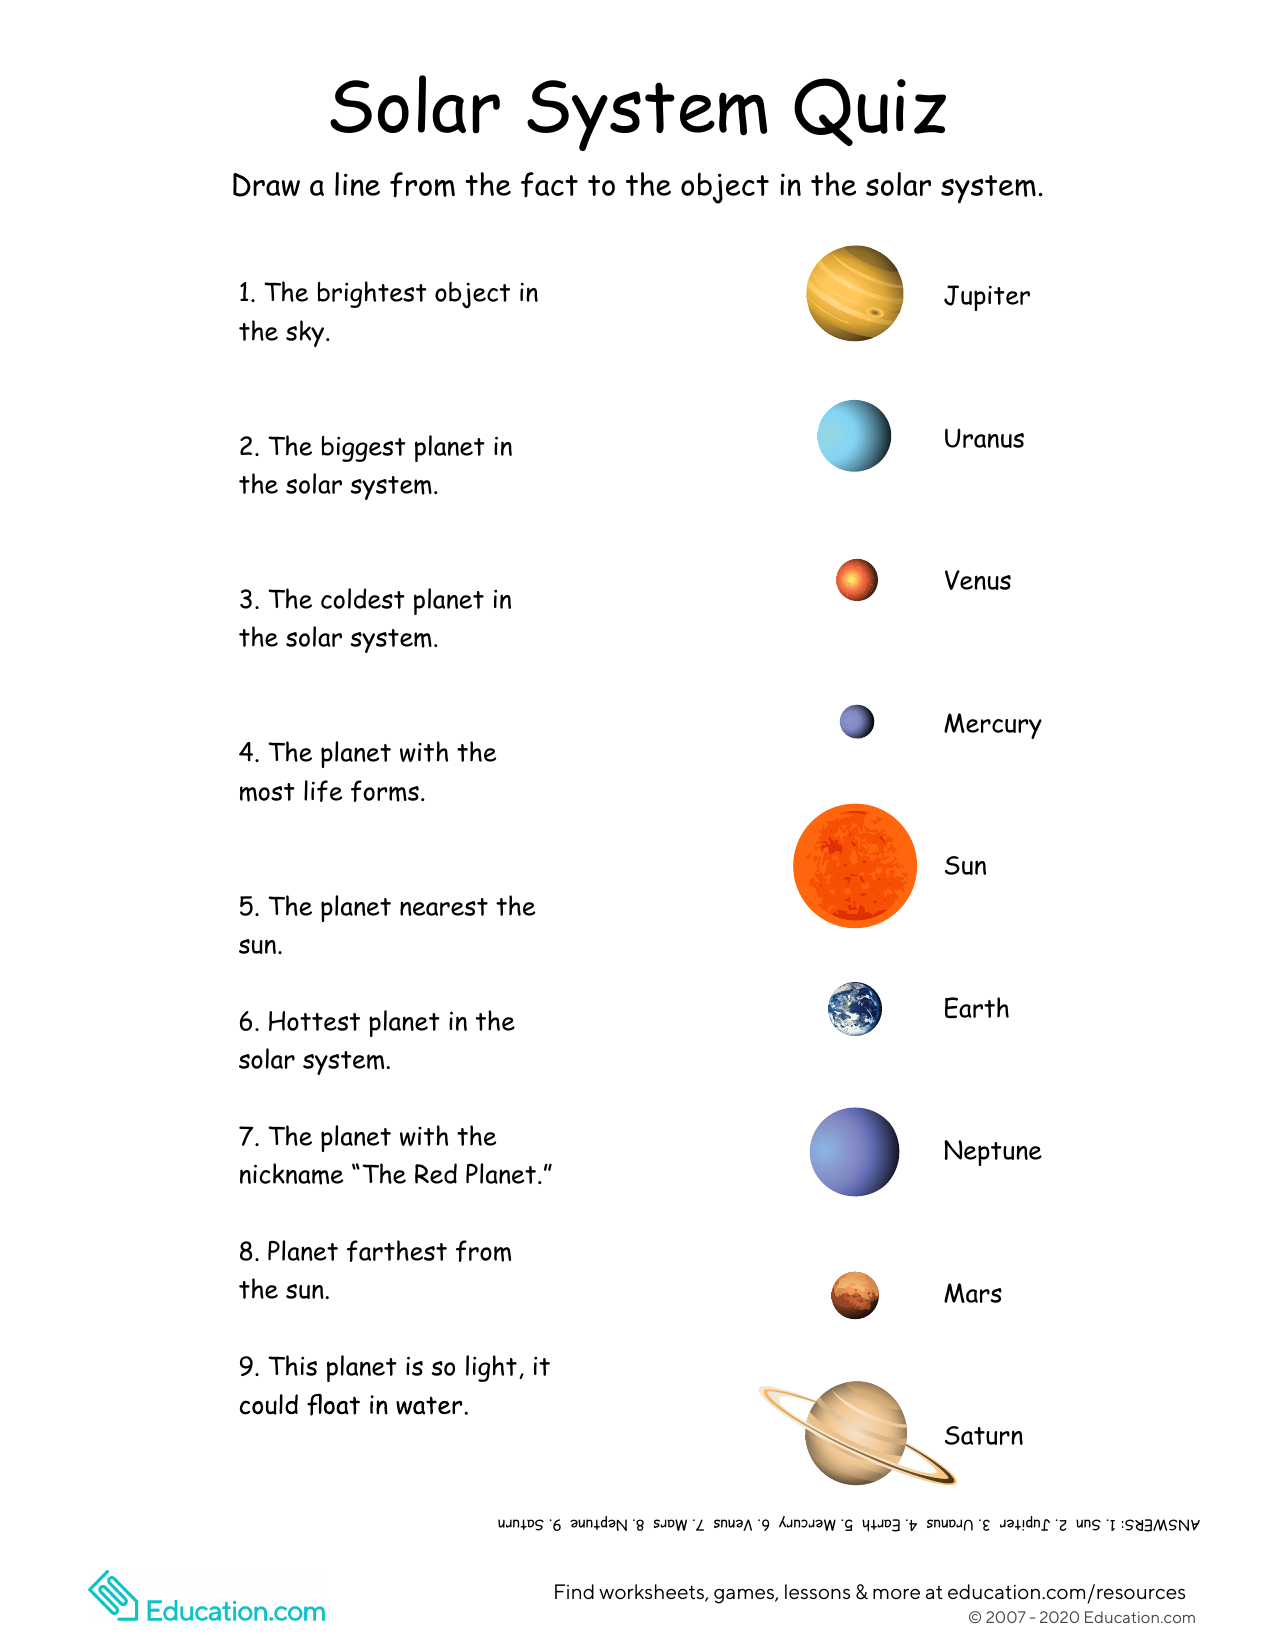 Названия планет на английском. Название планет с транскрипцией. Solar System задания. Названия планет на английском с транскрипцией.